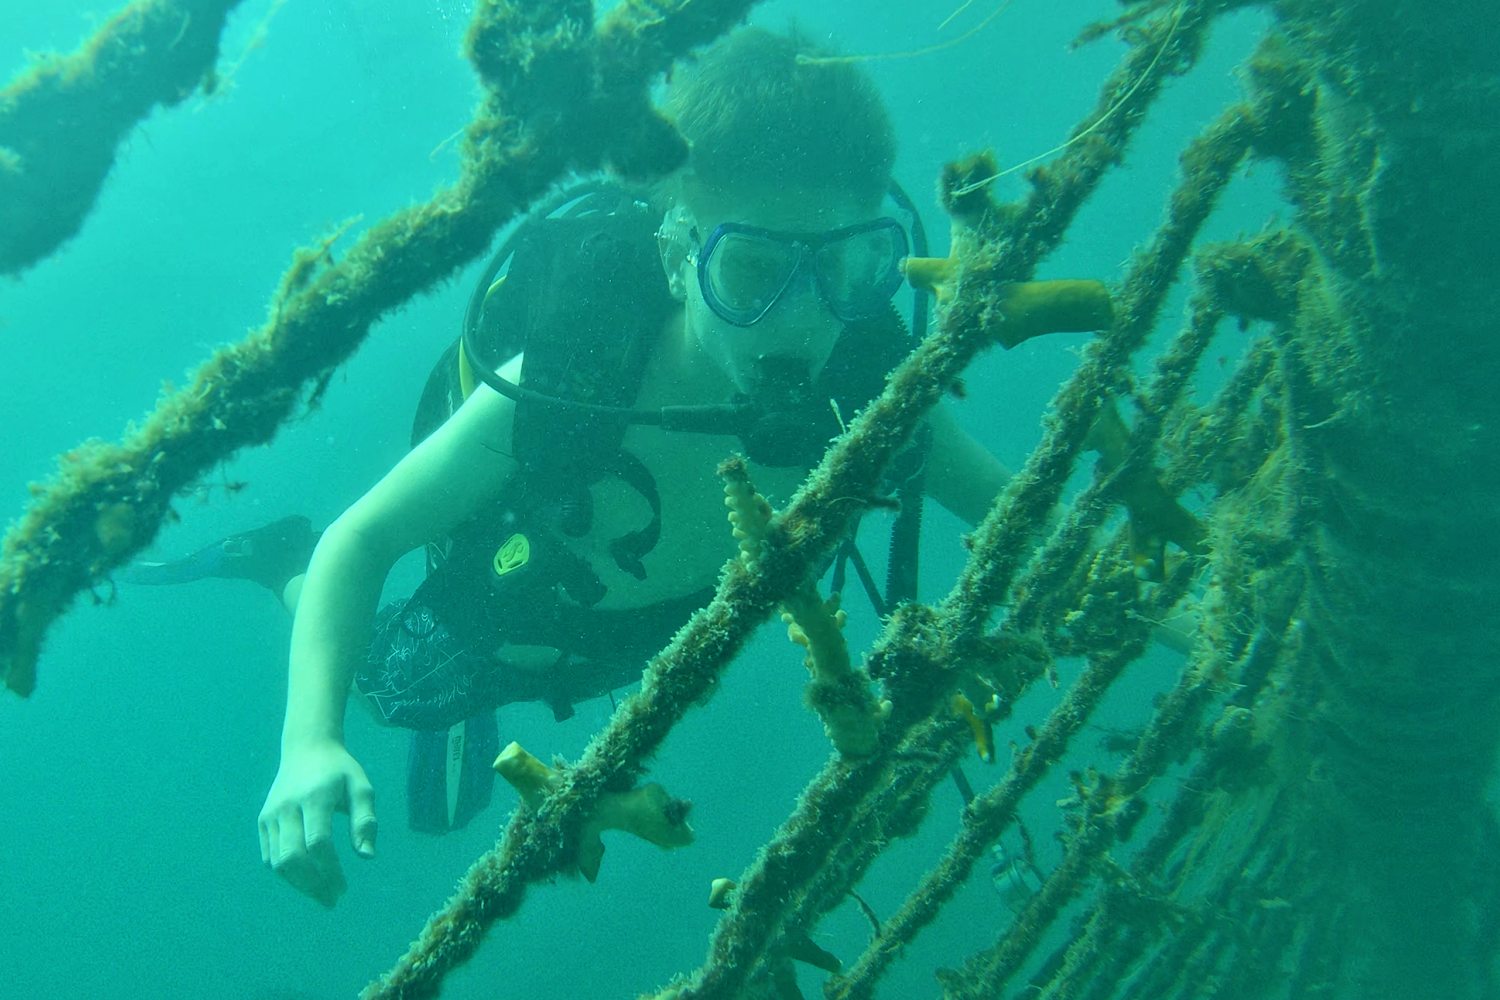 underwater coral nursery